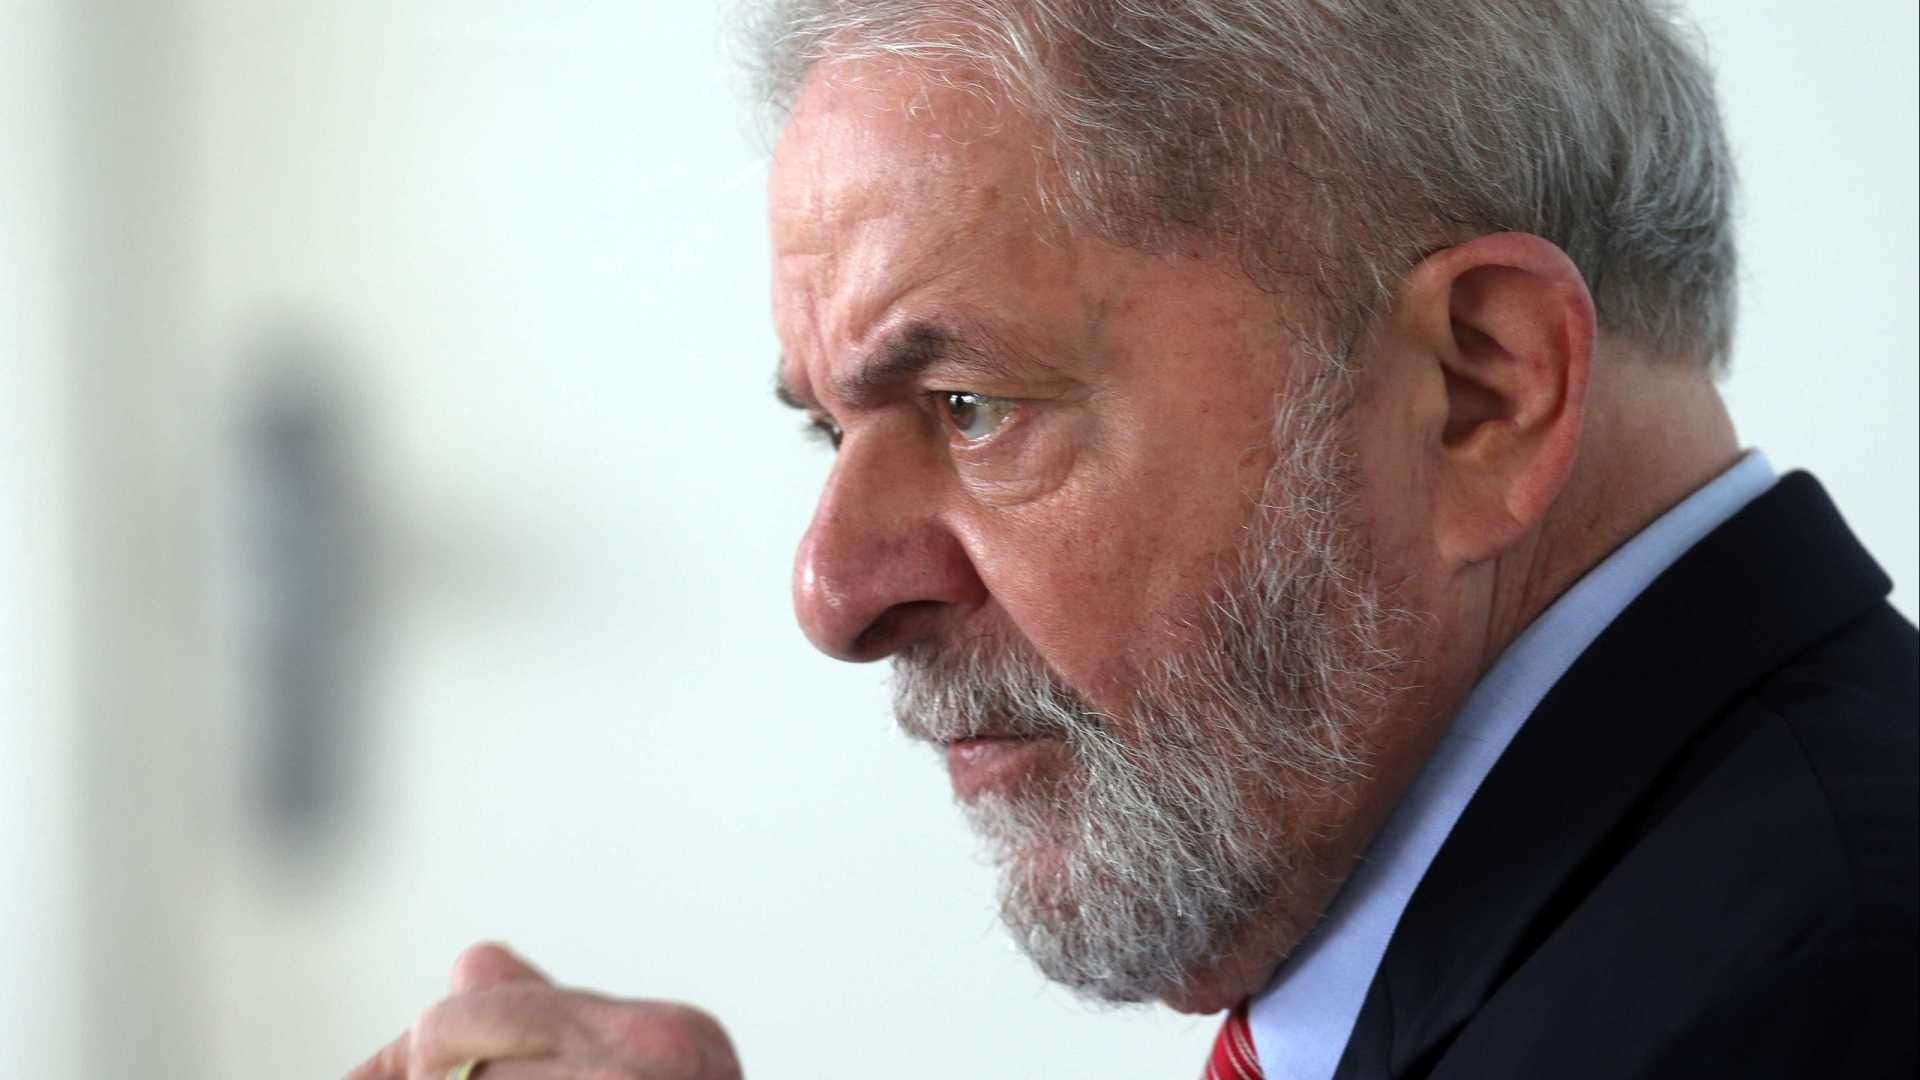 PGR se manifesta contra recurso em favor da candidatura de Lula